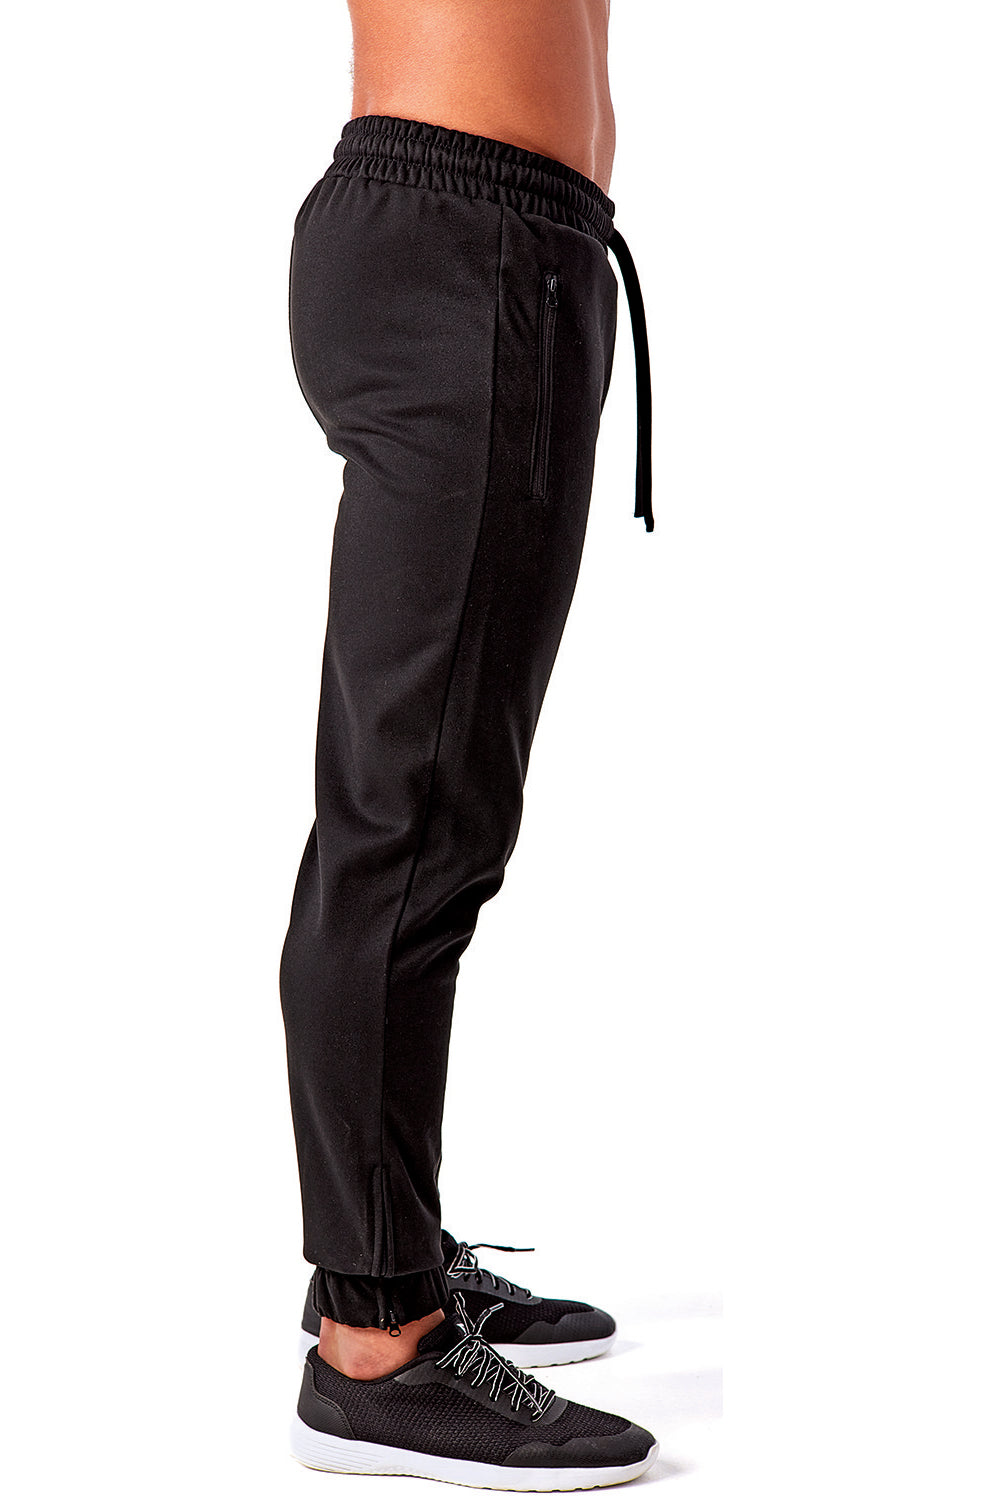 TriDri TD449 Mens Moisture Wicking Jogger Sweatpants w/ Pockets Black Side